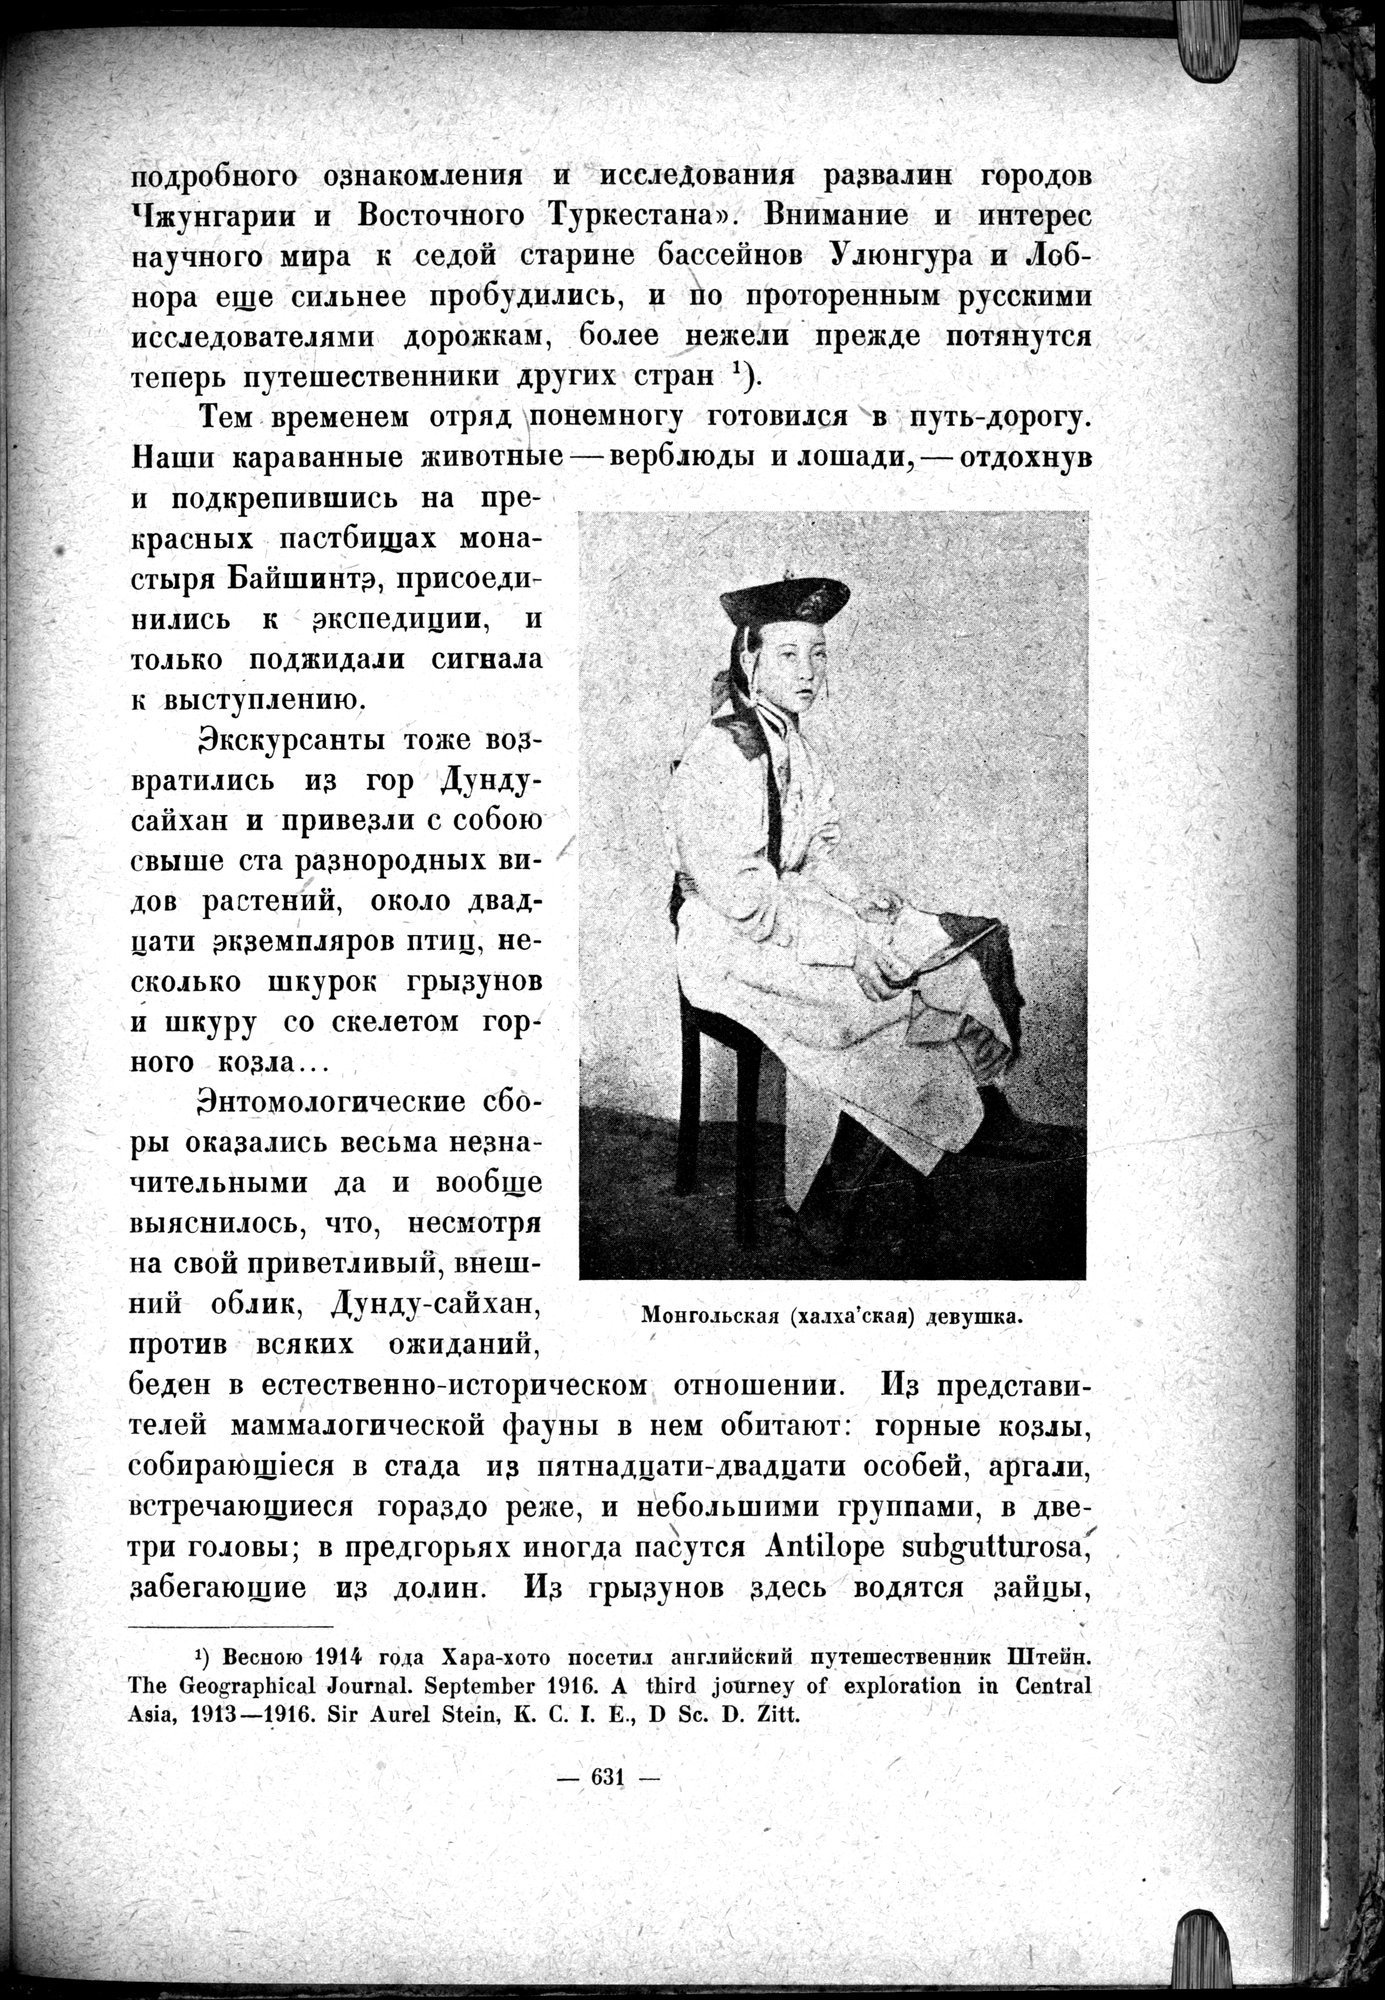 Mongoliya i Amdo i mertby gorod Khara-Khoto : vol.1 / 721 ページ（白黒高解像度画像）